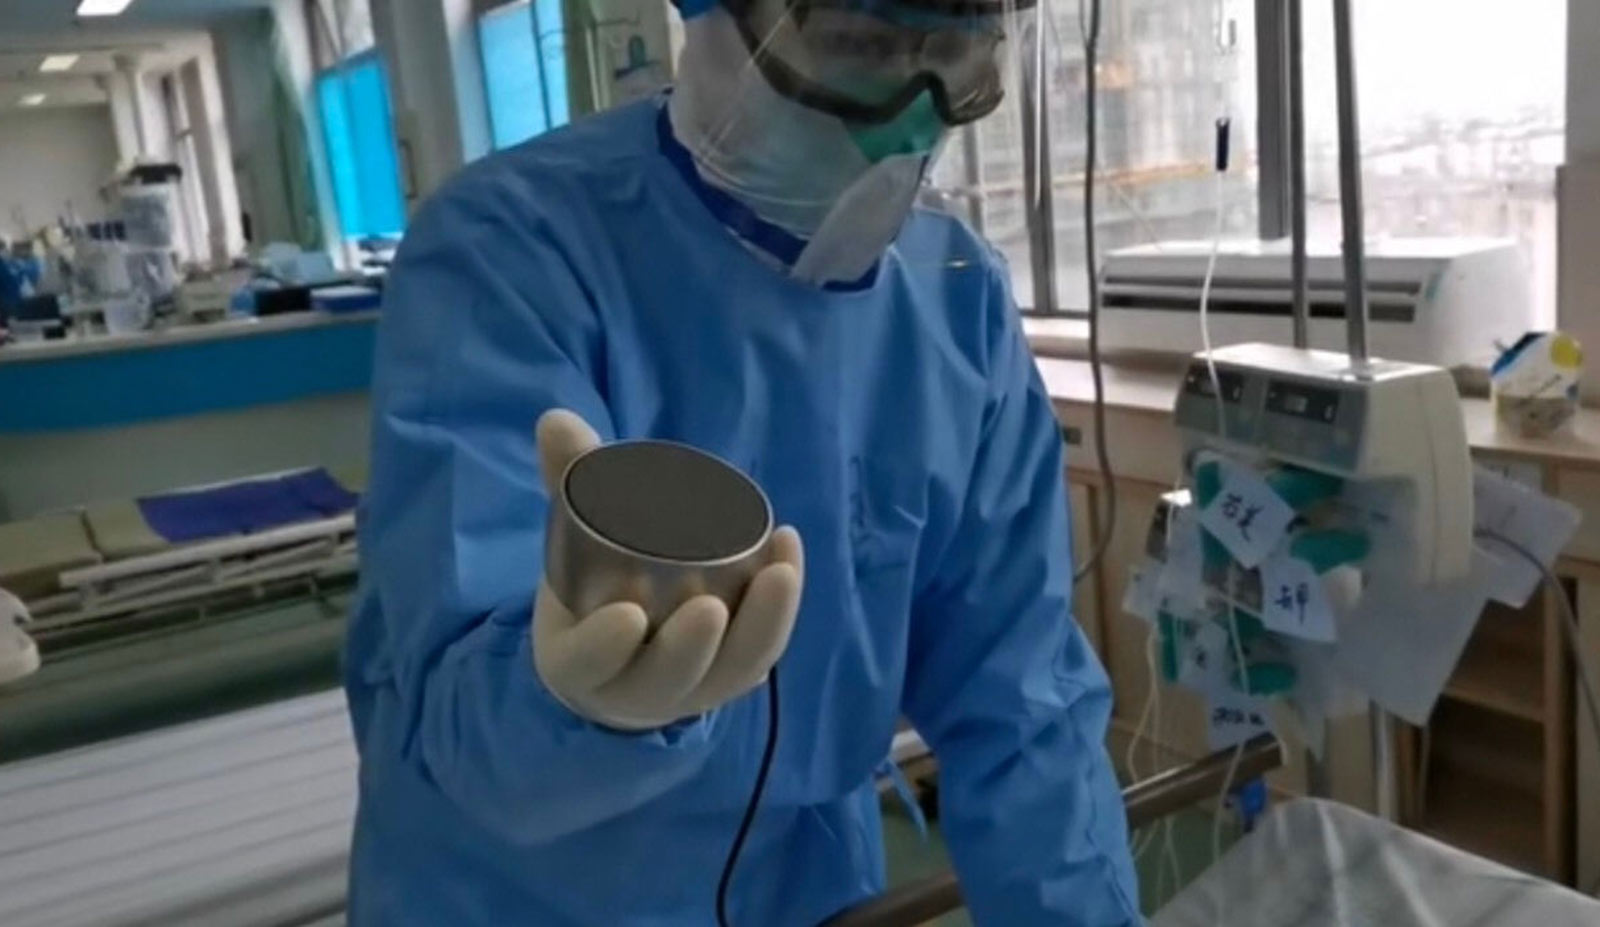 武漢的醫護人員使用AI輔助聽診系統，患者的肺音透過麥克風播放出來，不用脫掉防護衣就能聽診。